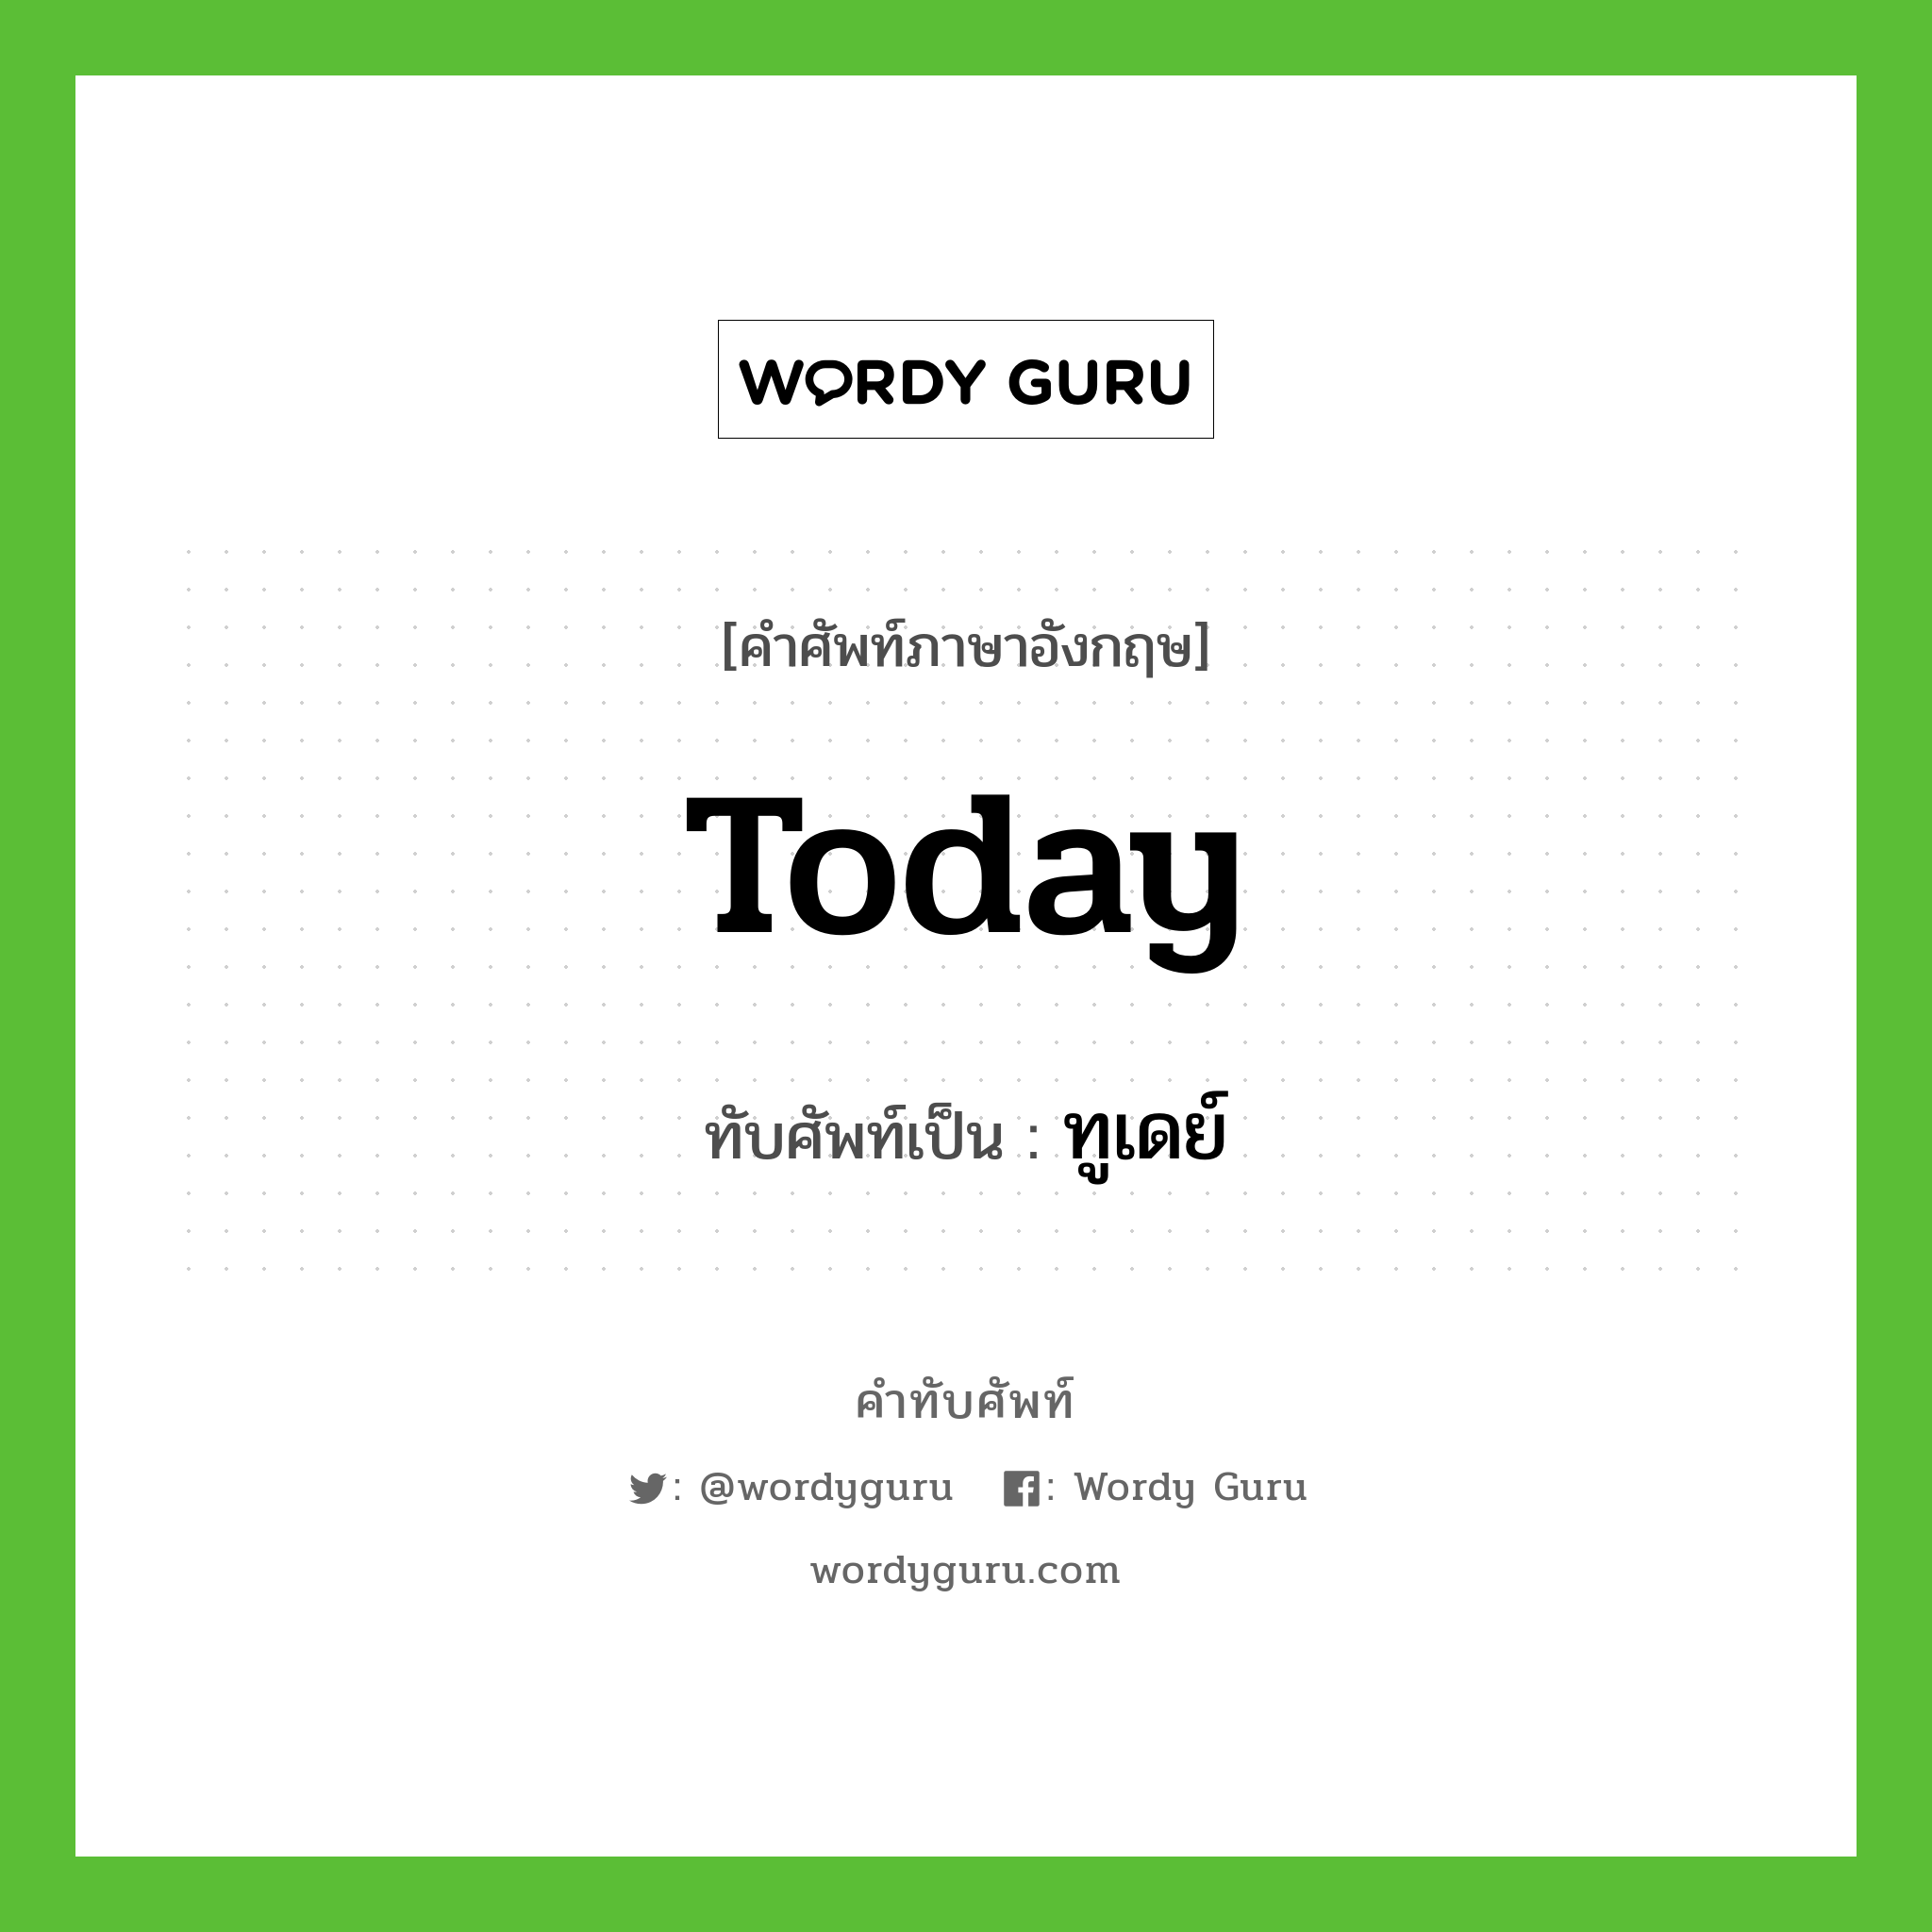 Today เขียนเป็นคำไทยว่าอะไร?, คำศัพท์ภาษาอังกฤษ Today ทับศัพท์เป็น ทูเดย์